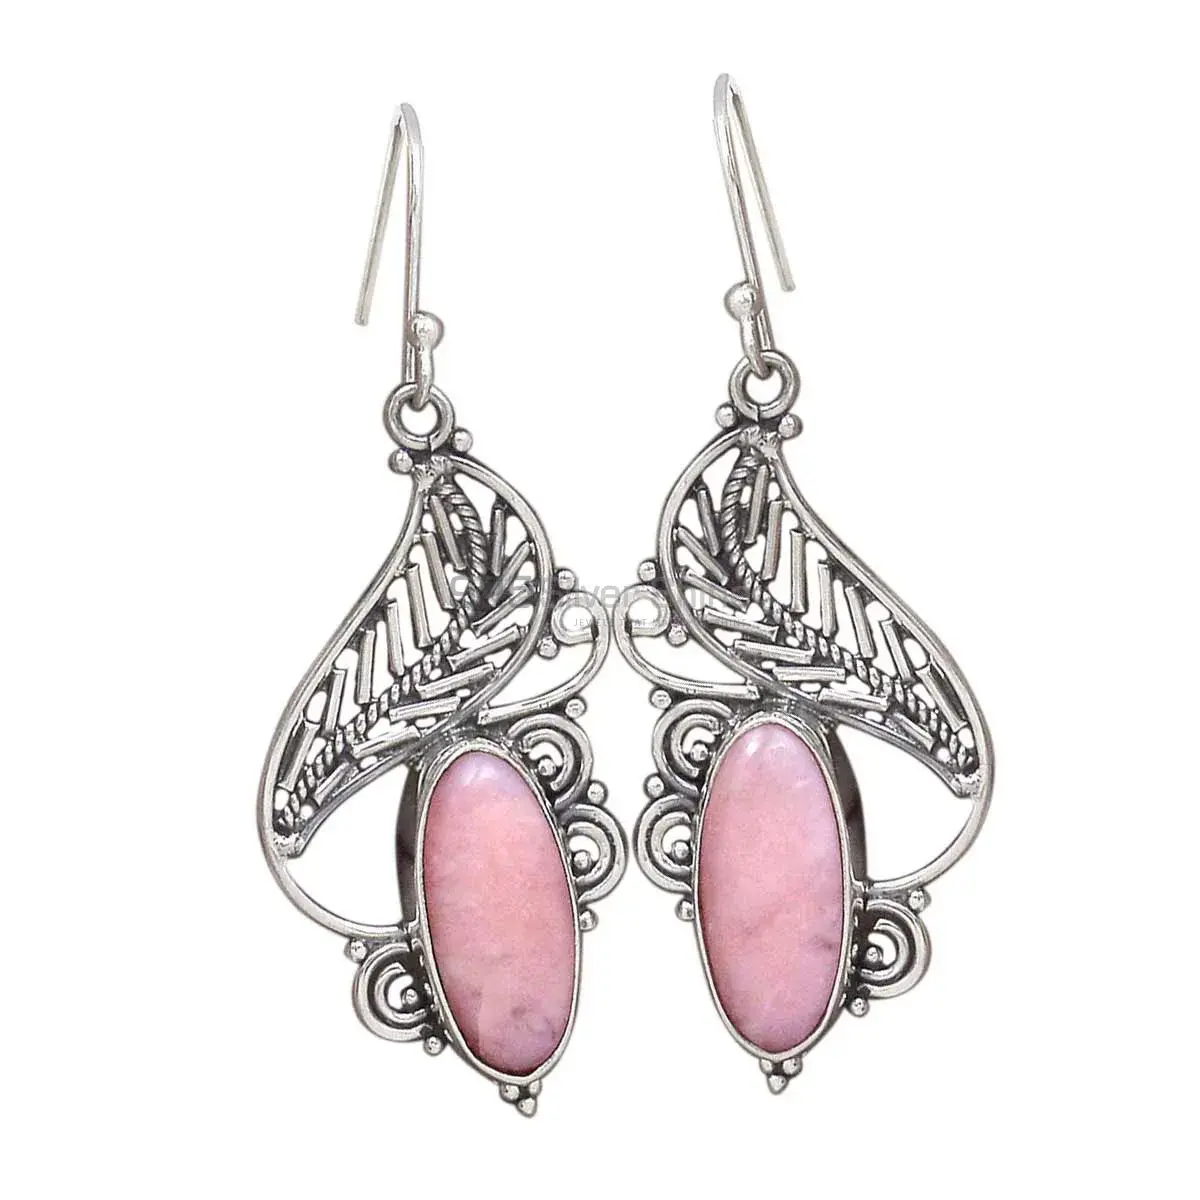 Beautiful 925 Sterling Silver Earrings Wholesaler In Pink Opal Gemstone Jewelry 925SE2953